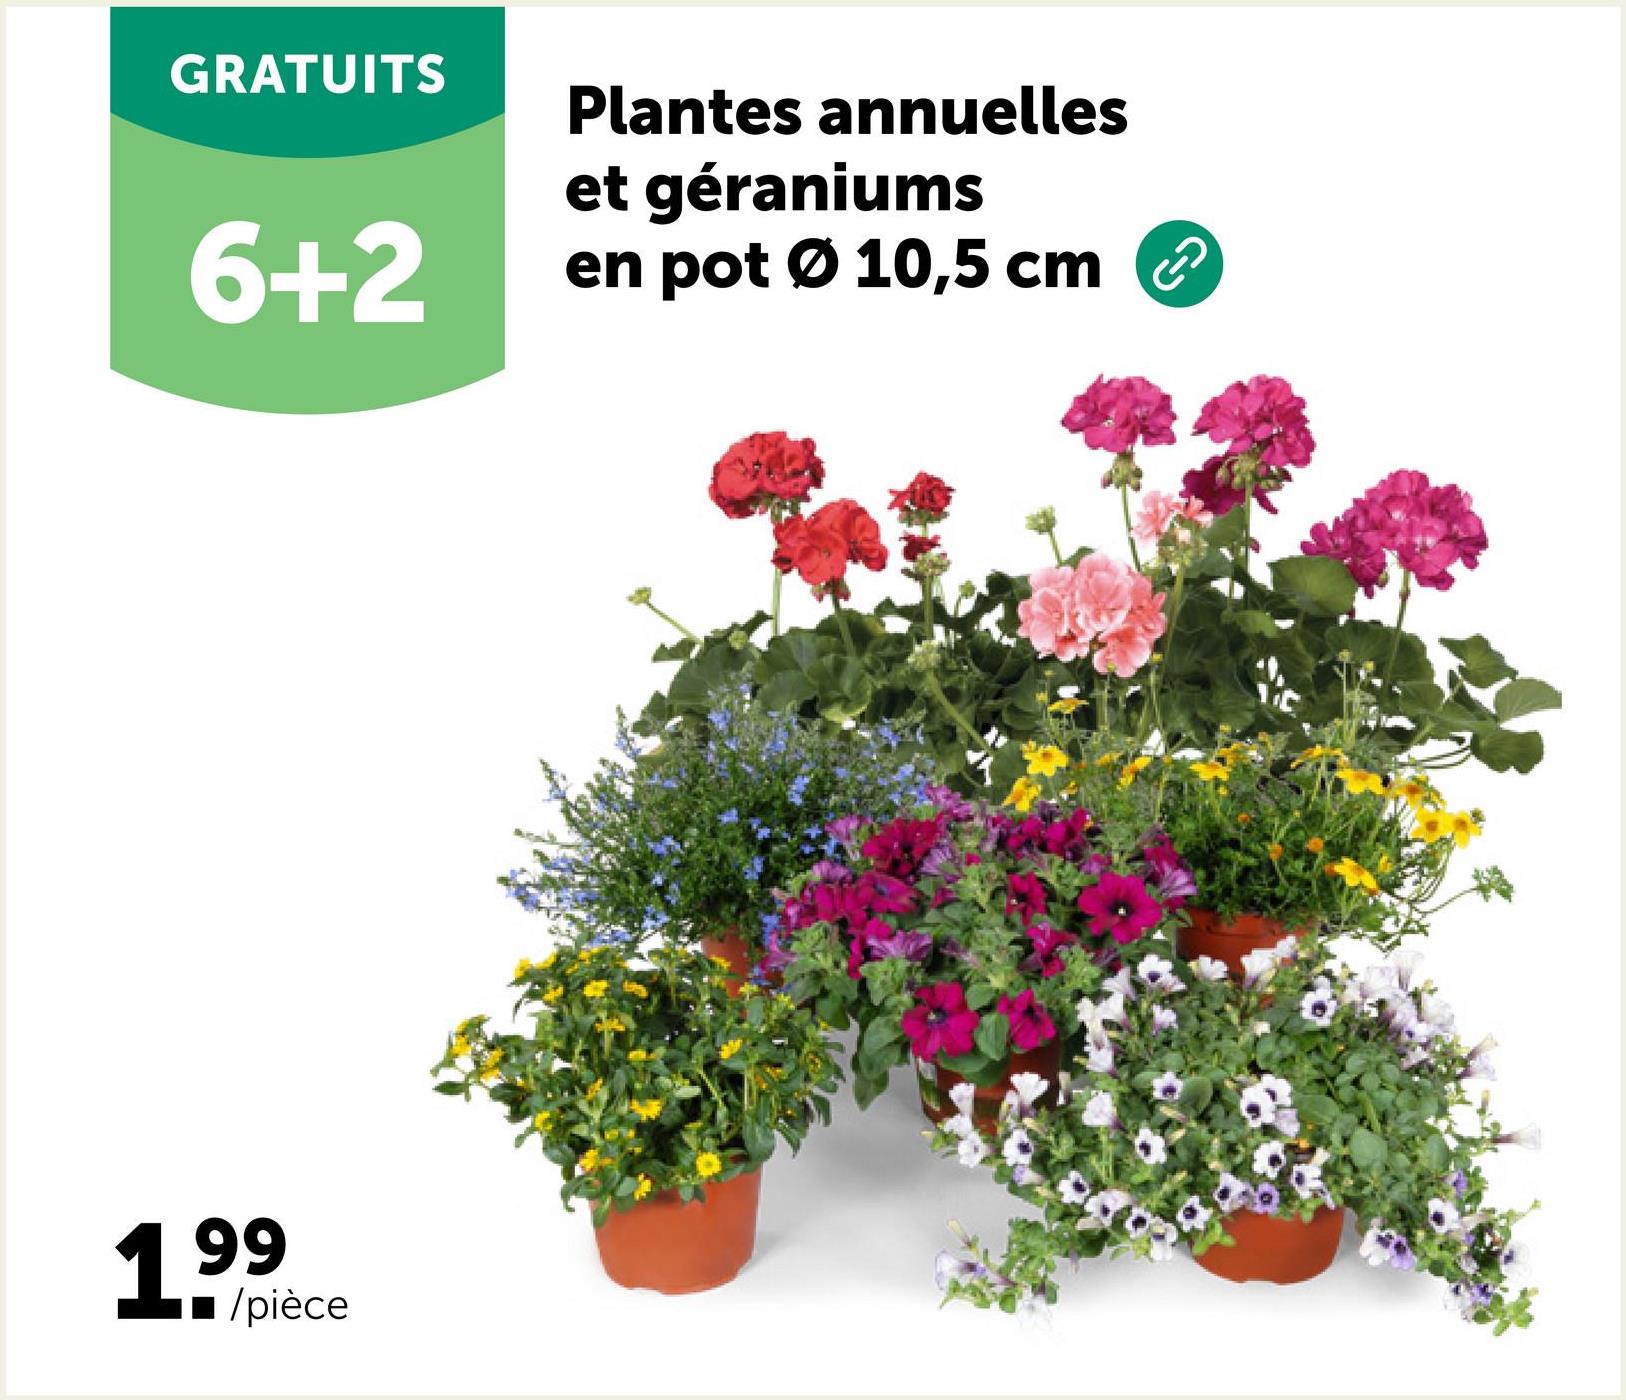 GRATUITS
6+2
Plantes annuelles
et géraniums
en pot Ø 10,5 cm
199 pièce